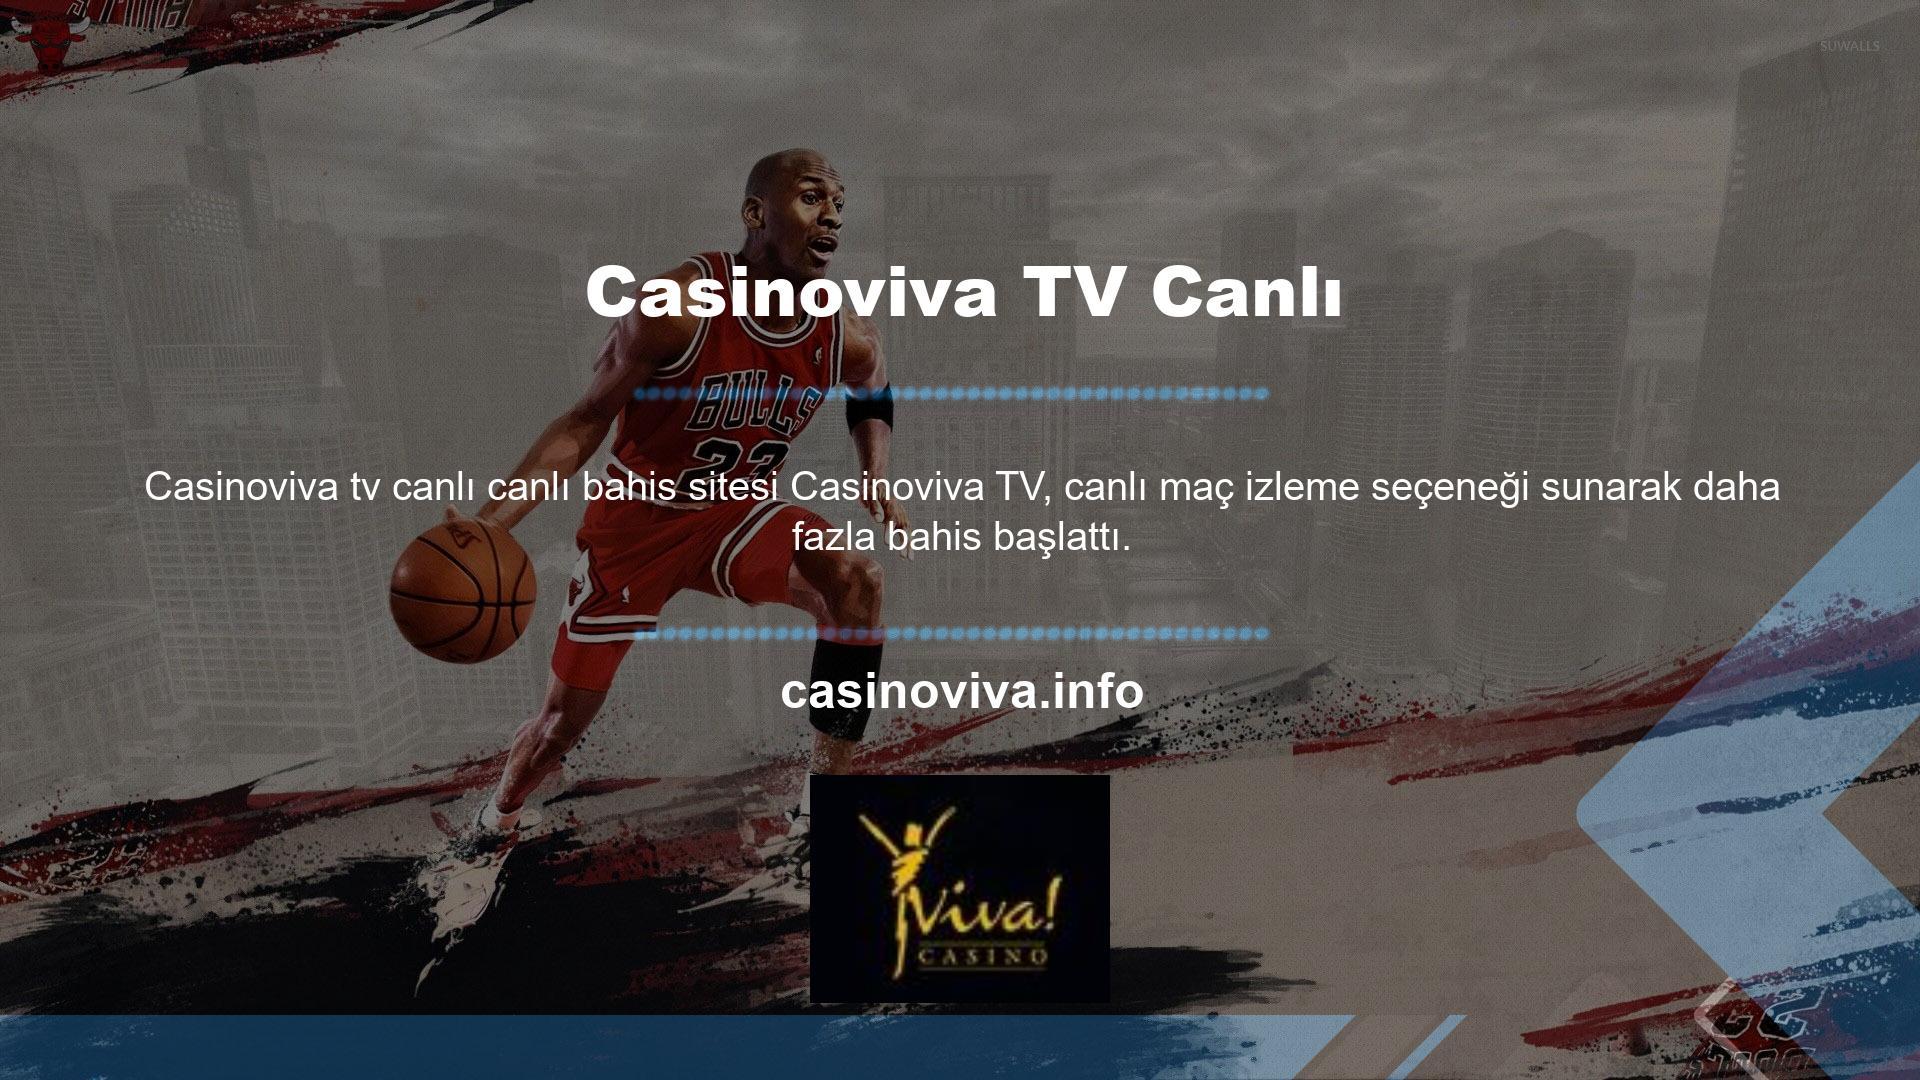 Bahisçiler maçı Casinoviva TV üzerinden izleyebilir ve anında bahis oynayabilir